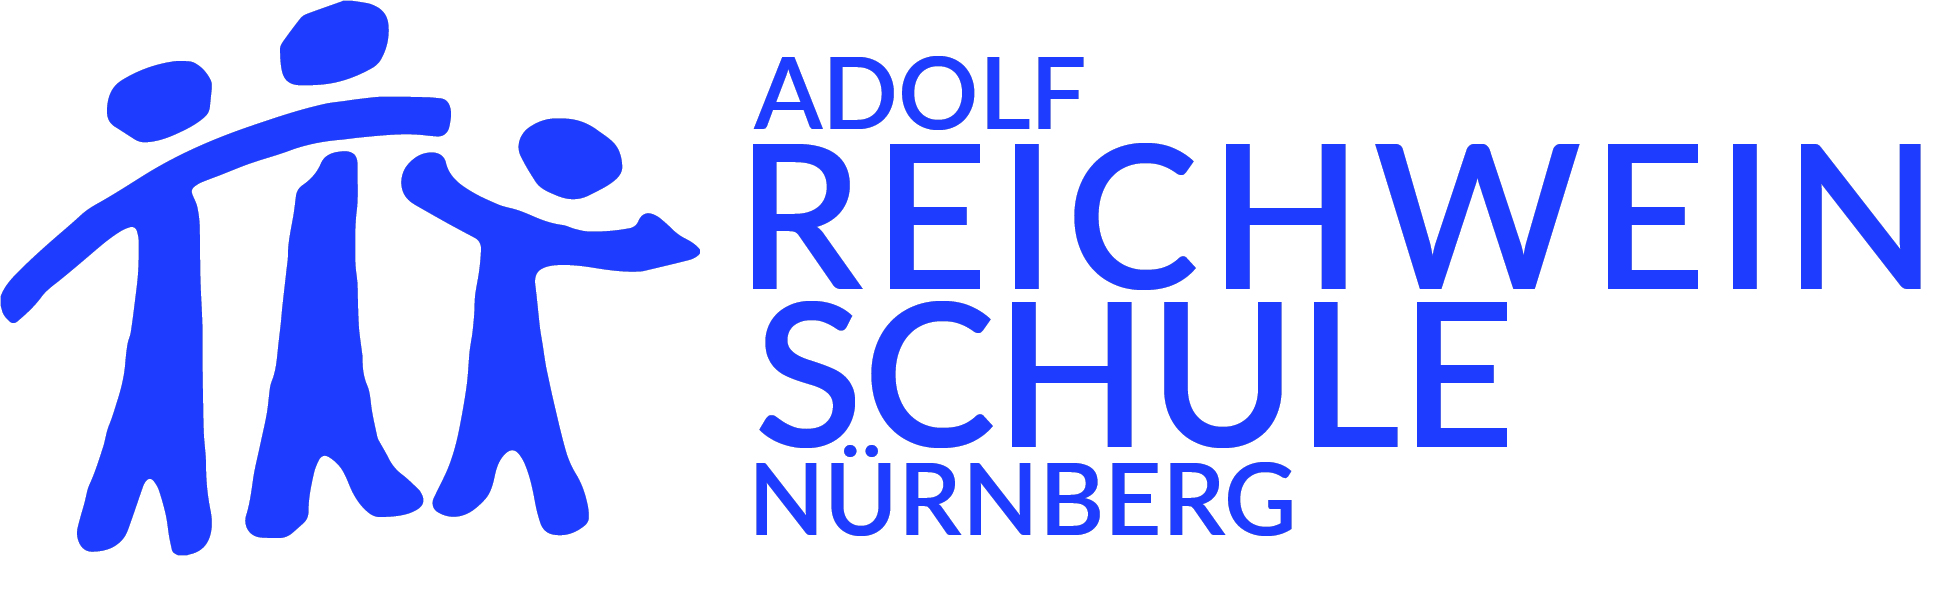 Adolf-Reichwein-Schule Nürnberg -Private Realschule-